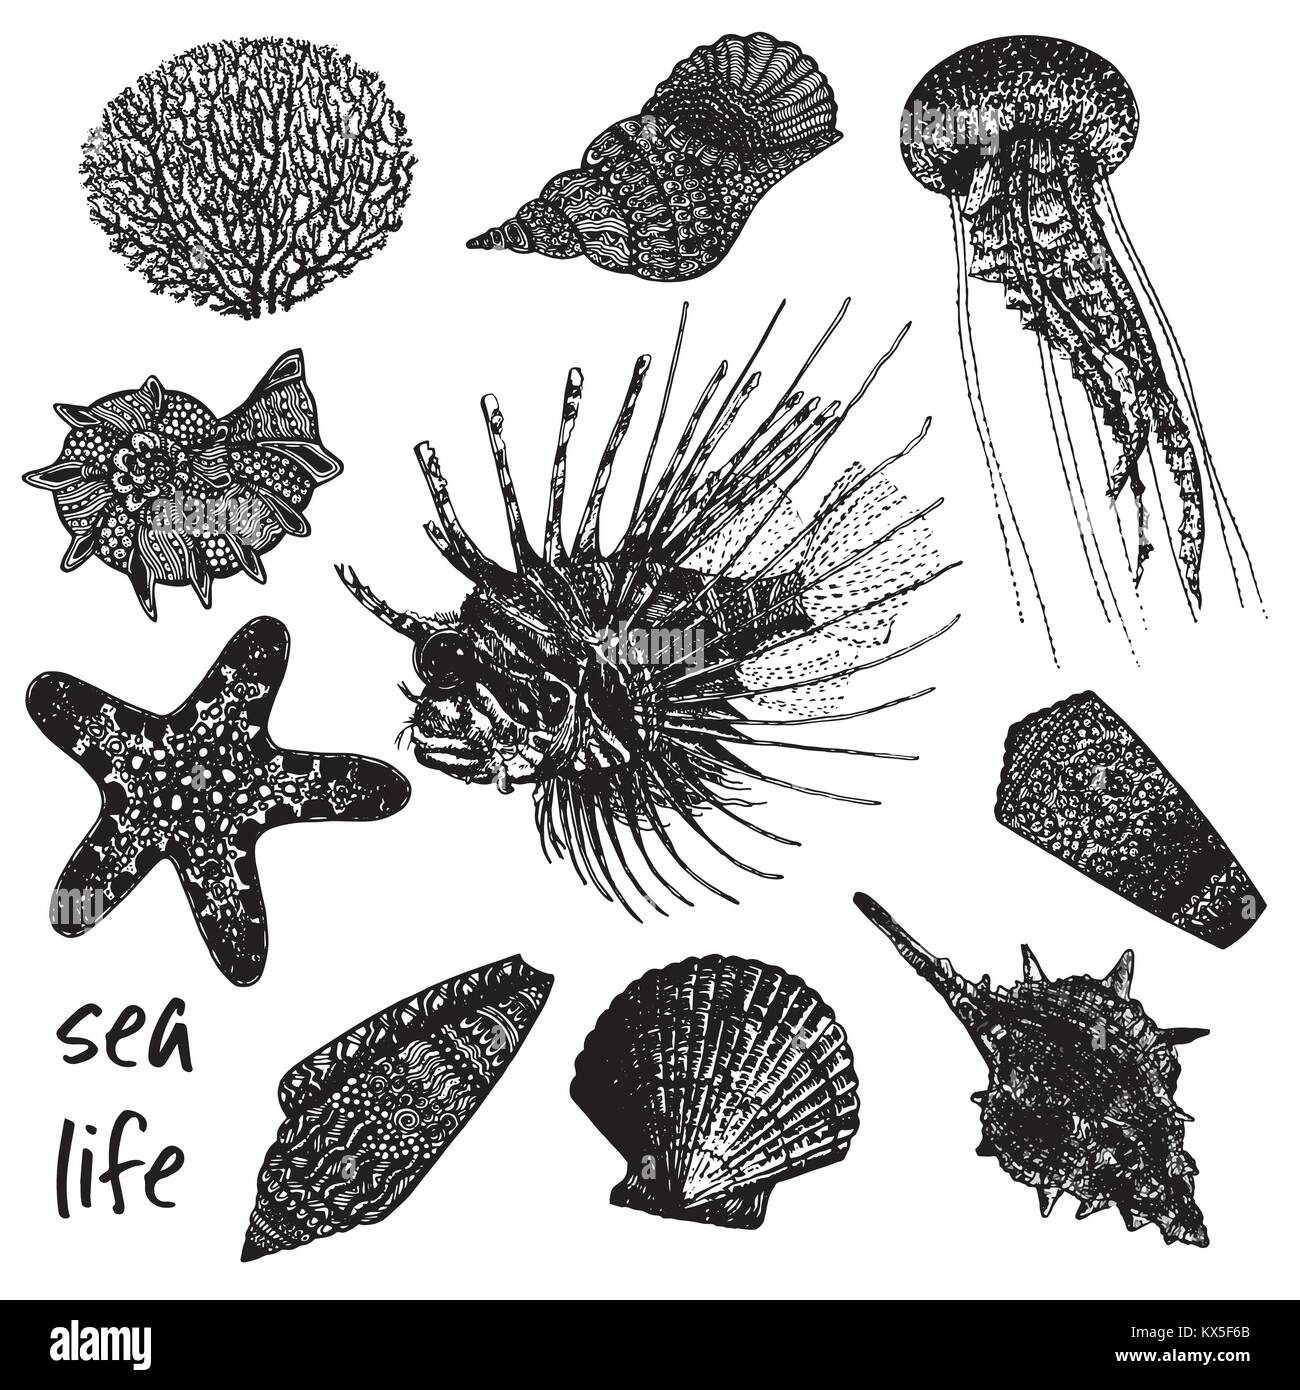 Mano bozzetto insieme di creature del mare - coral, conchiglie, meduse, pesci leone e stelle marine. Illustrazione di vettore isolato su sfondo bianco. Illustrazione Vettoriale